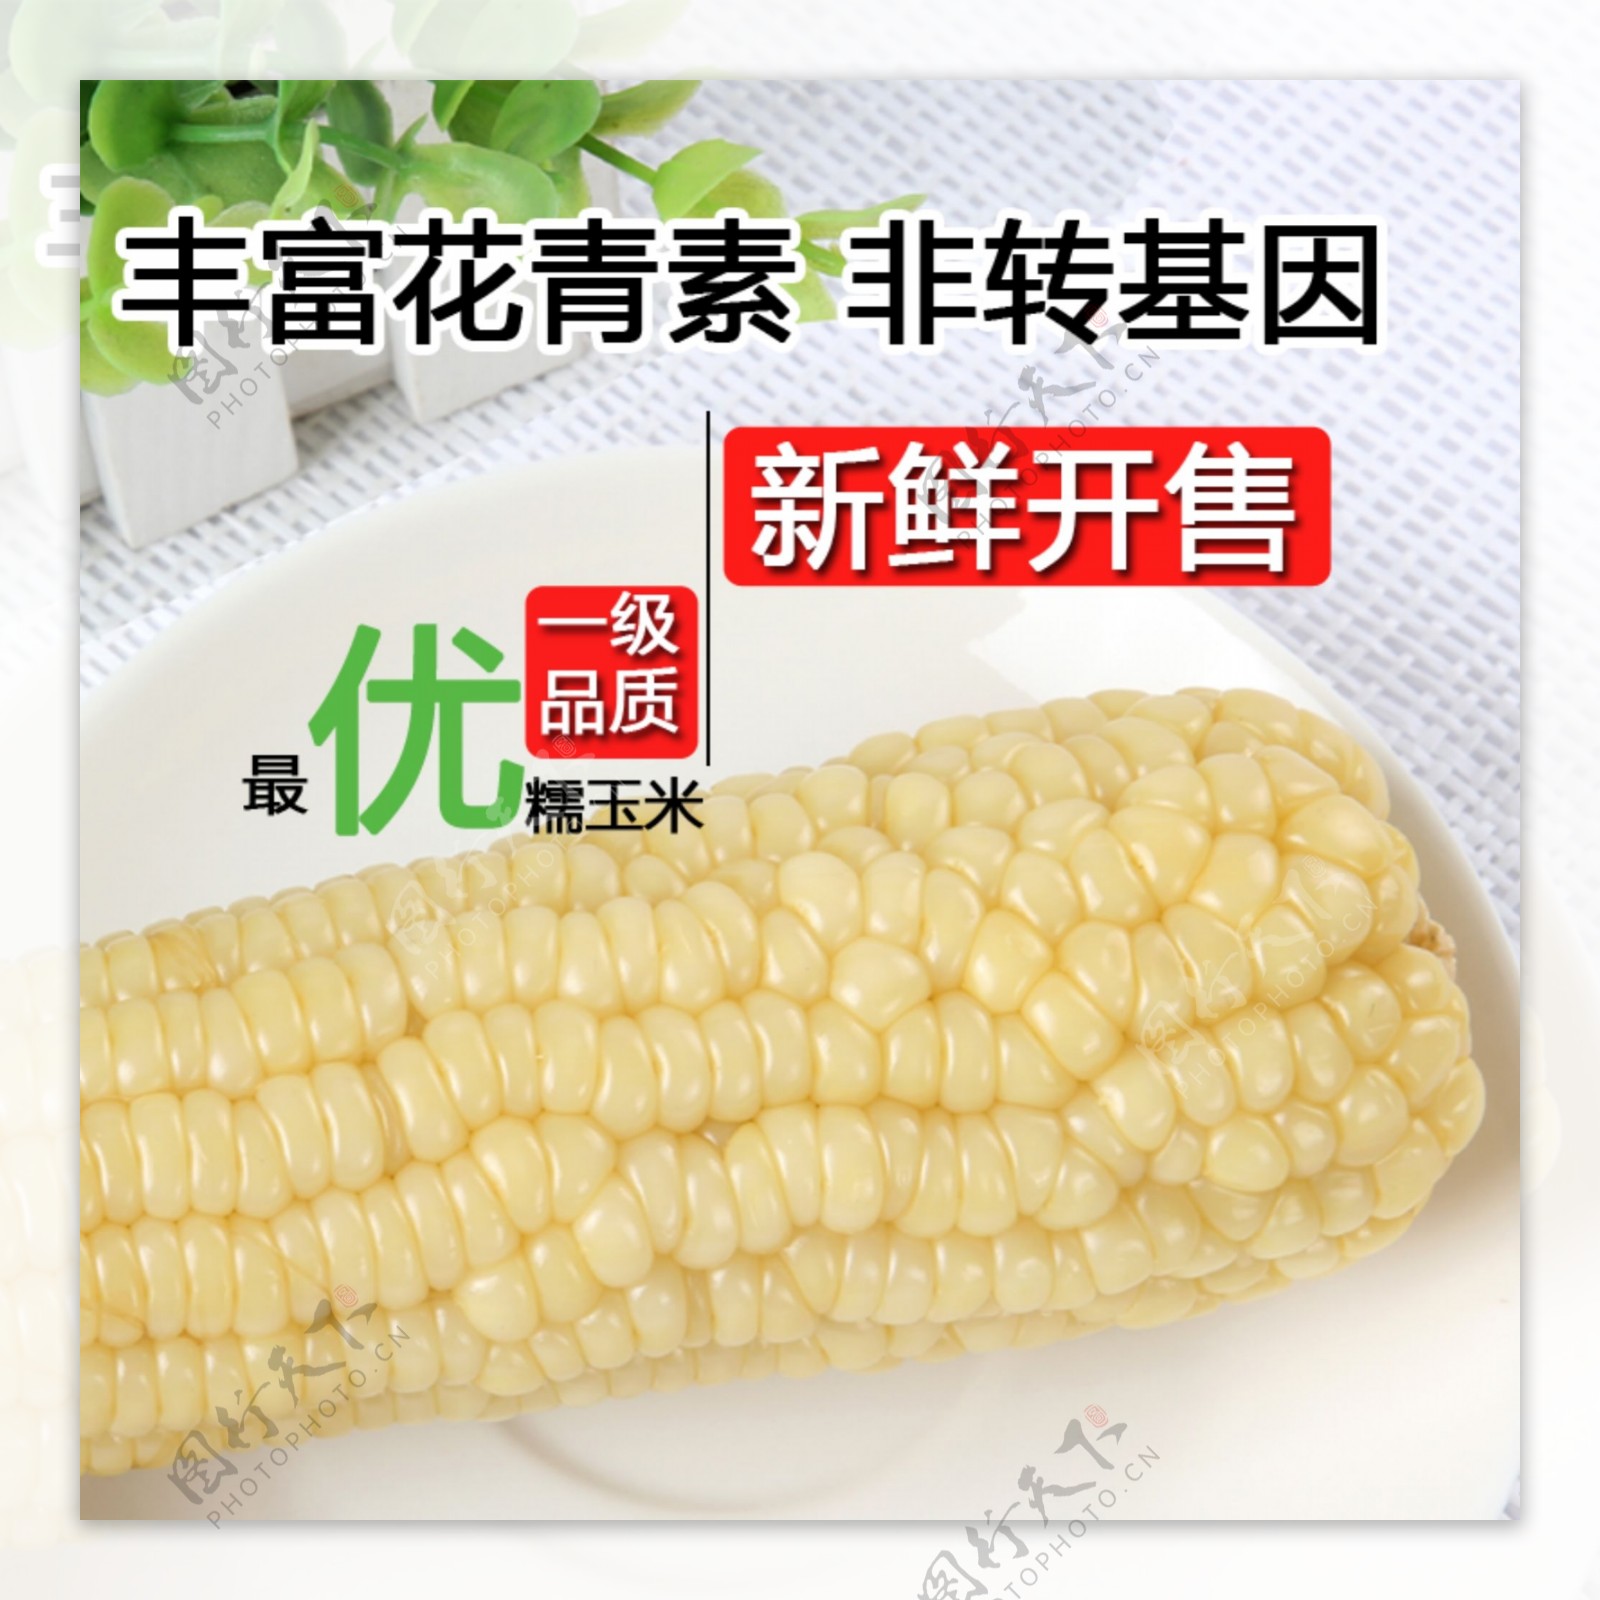 白色玉米图片淘宝详情主图